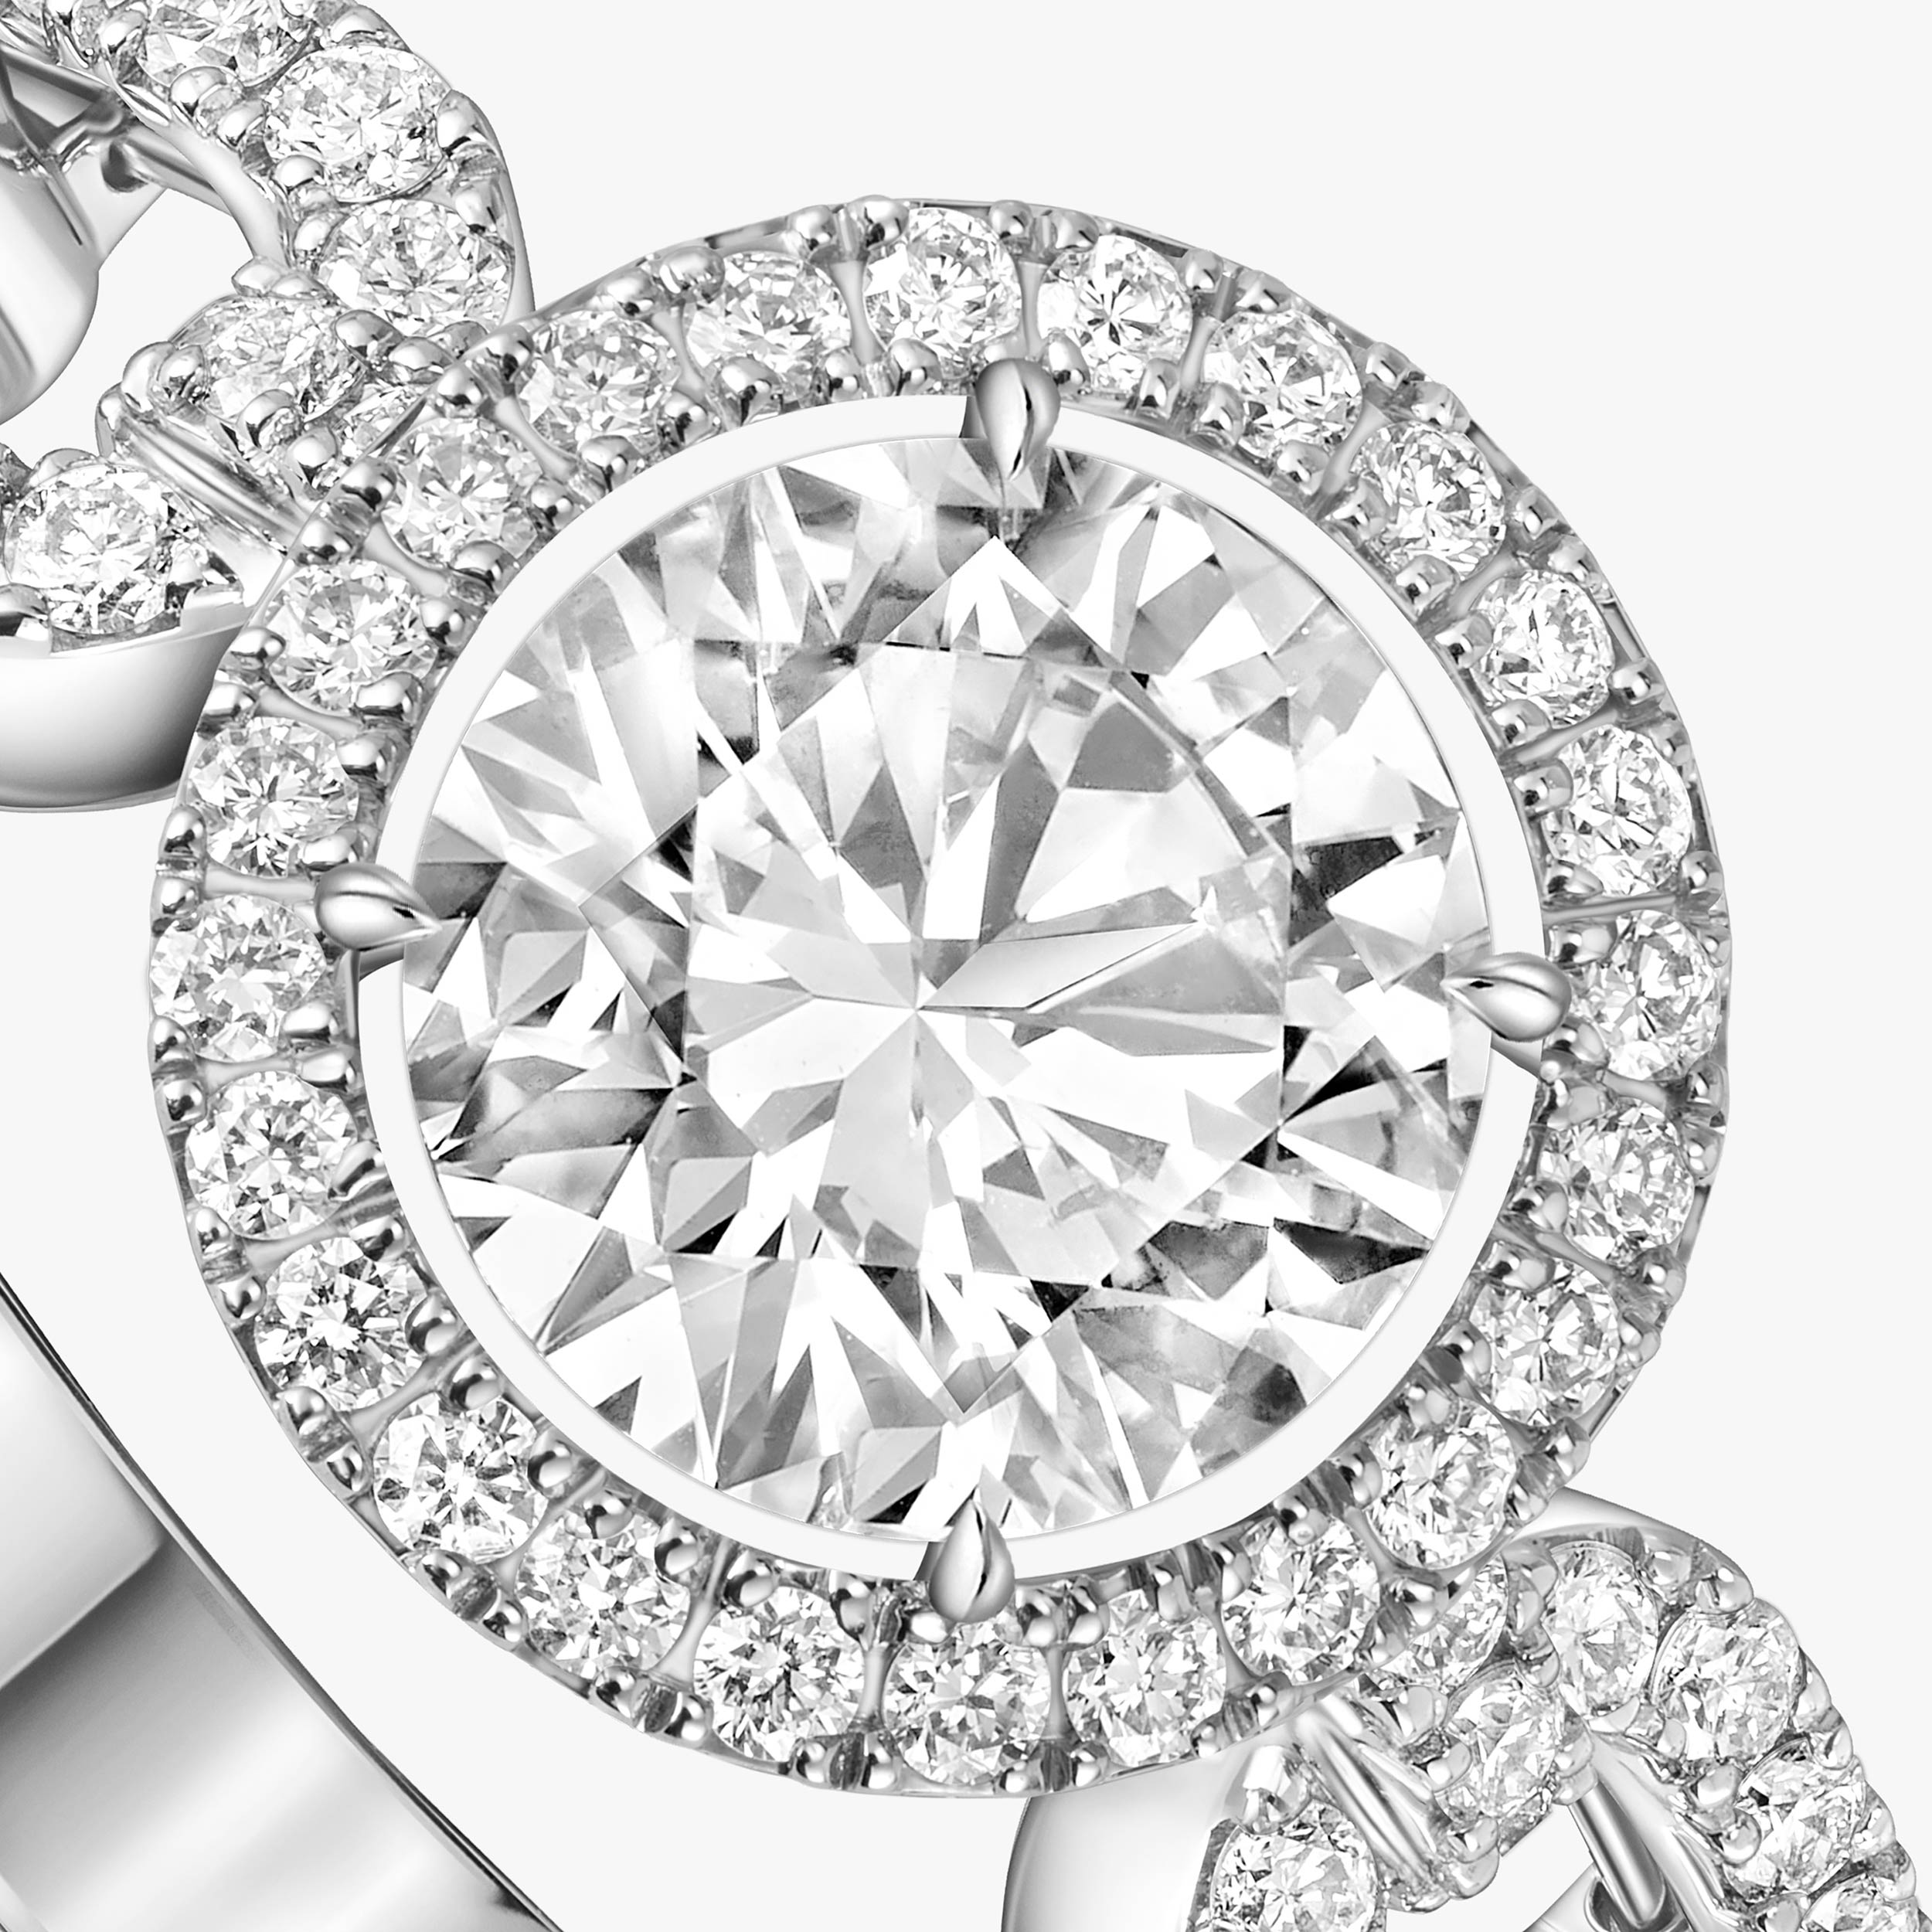 خاتم امرأة ذهب أبيض الماس خاتم السوليتير Move Link 0.70 قيراط 13749-WG